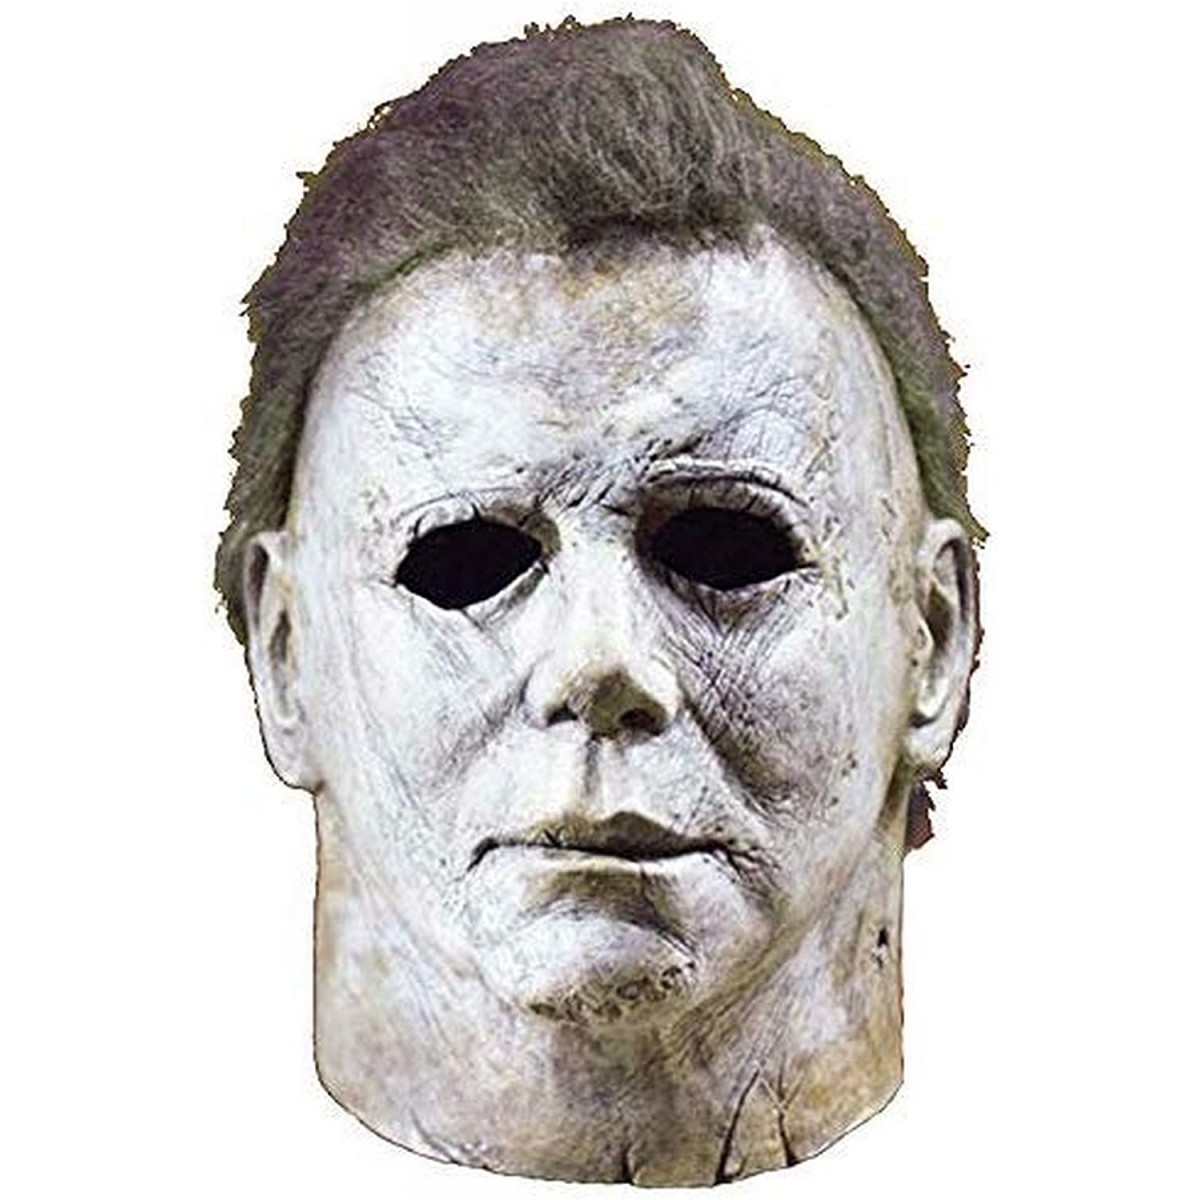 Costume di carnevale e Halloween per adulti Maschera Michael Myers Halloween Cosplay Horror Maschera completo Personaggio cinematografico spaventoso Costume cosplay per adulti 